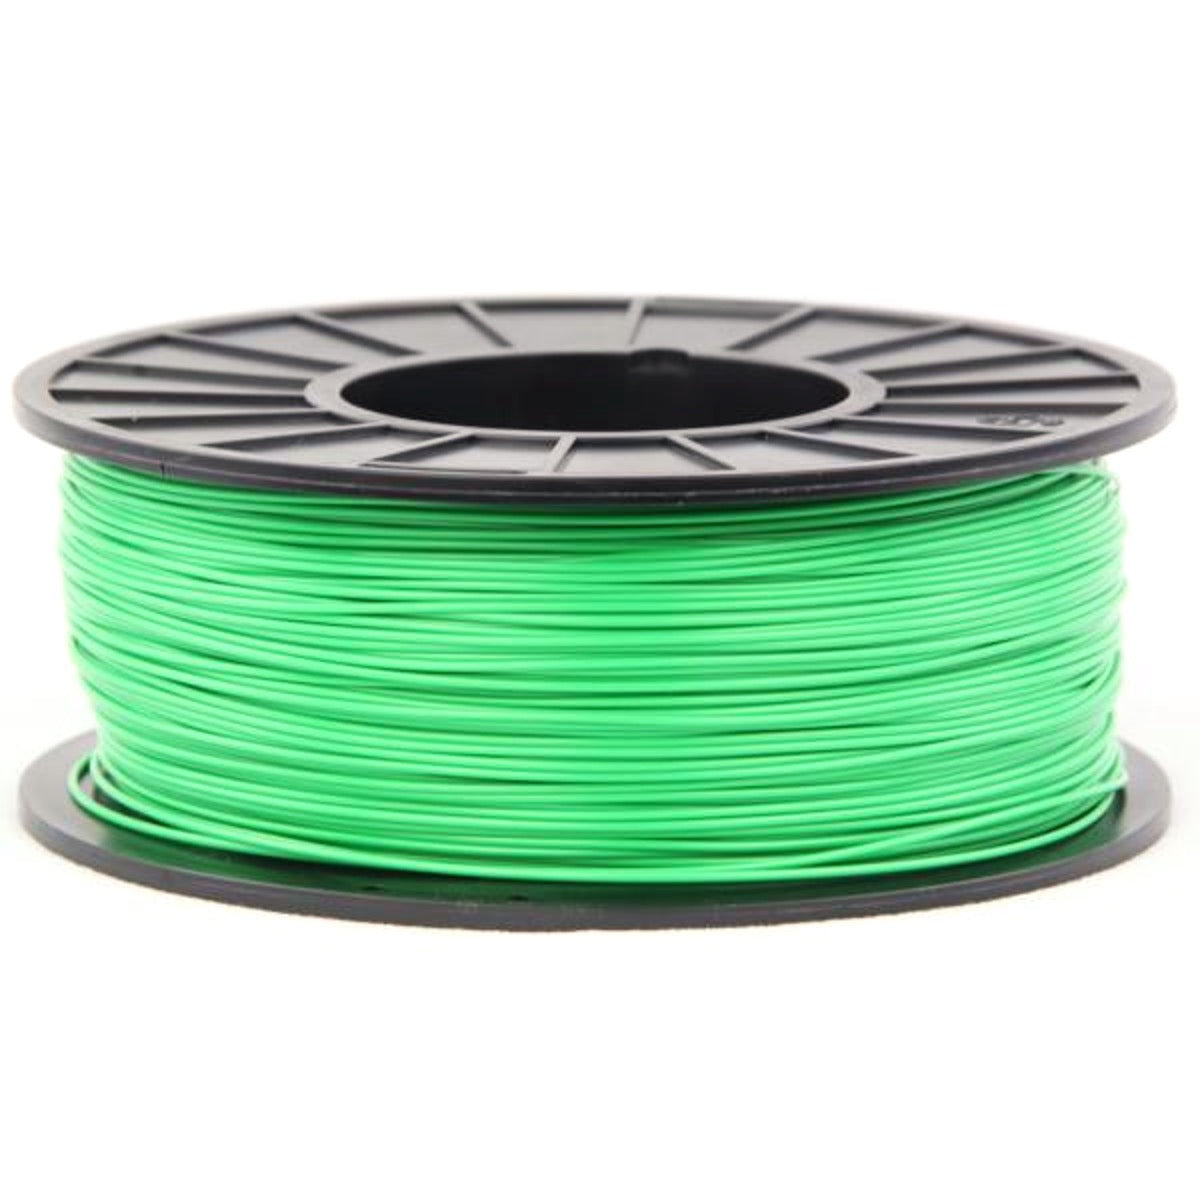 3DMakerWorld ABS (PA-747) Filament - 1.75mm, 1kg, Green